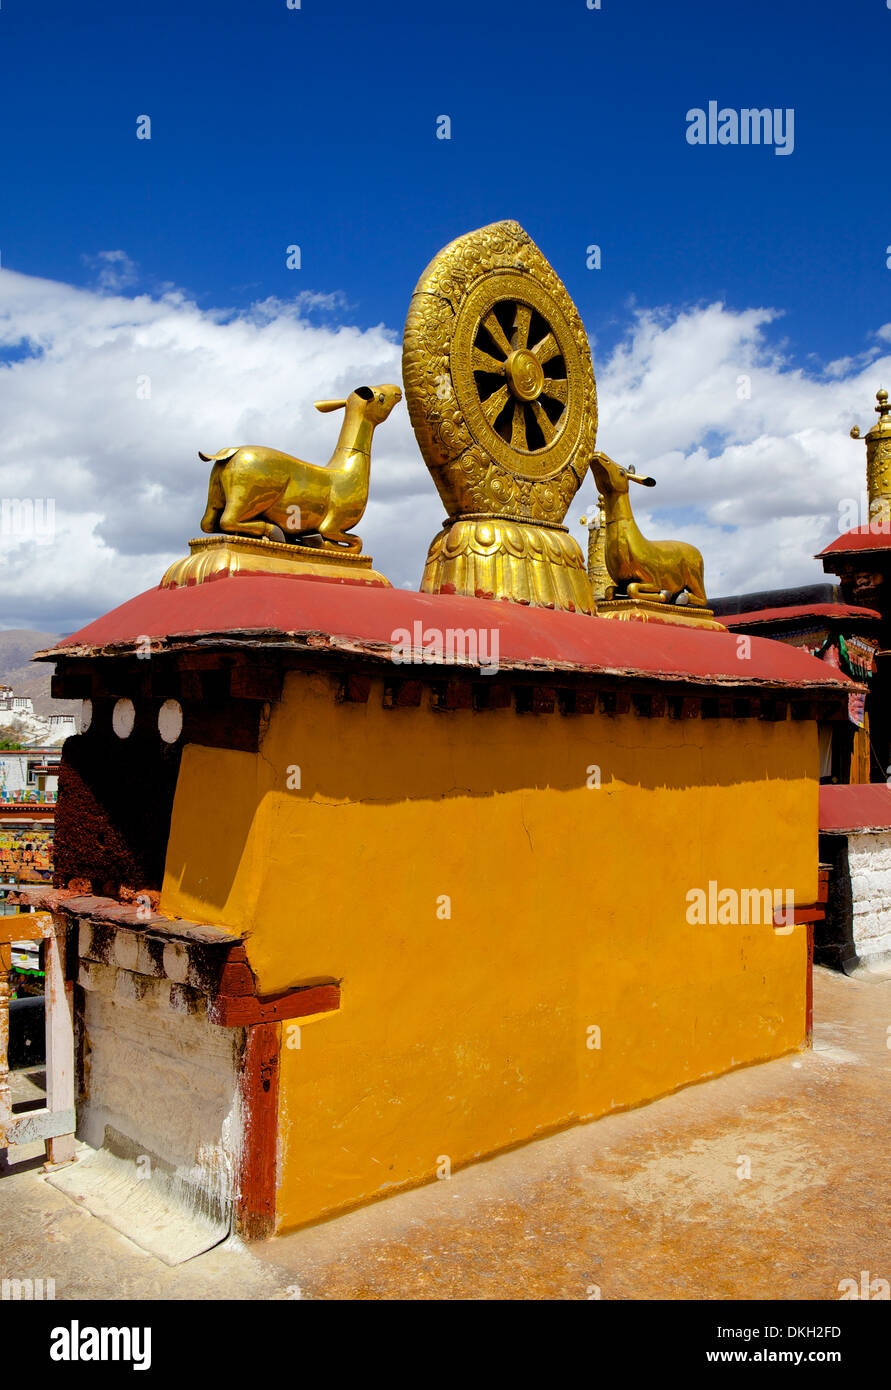 Goldenen Rad des Dharma und Hirsch Skulpturen auf den Heiligen Jokhang Tempel Dach, Barkhor Square, Lhasa, Tibet, China, Asien Stockfoto